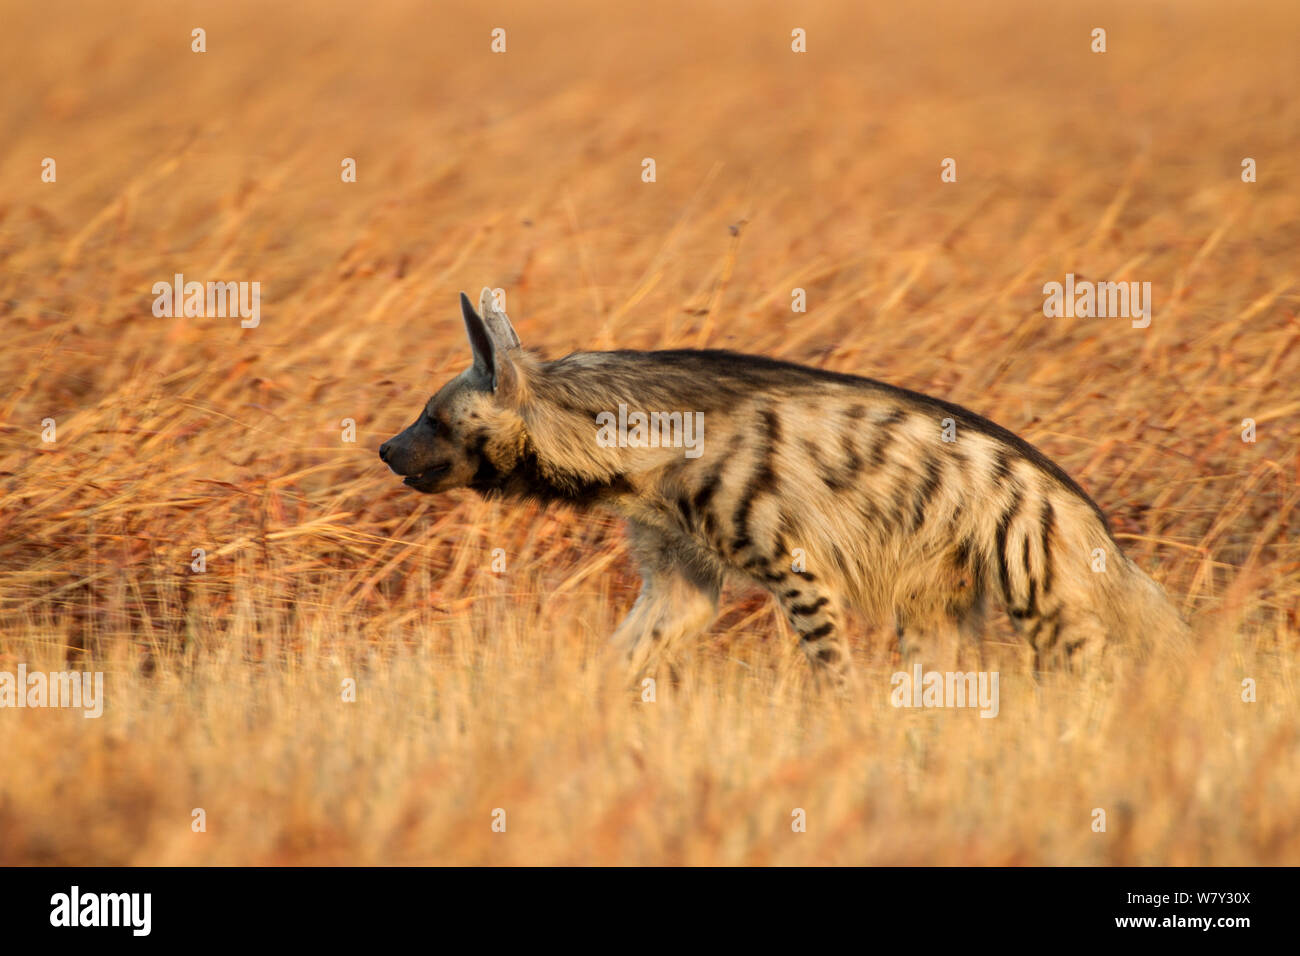 Gestreifte Hyänen (Hyaena hyaena) im Grasland. Hirschziegenantilope Nationalpark, Velavadar, Indien. Stockfoto